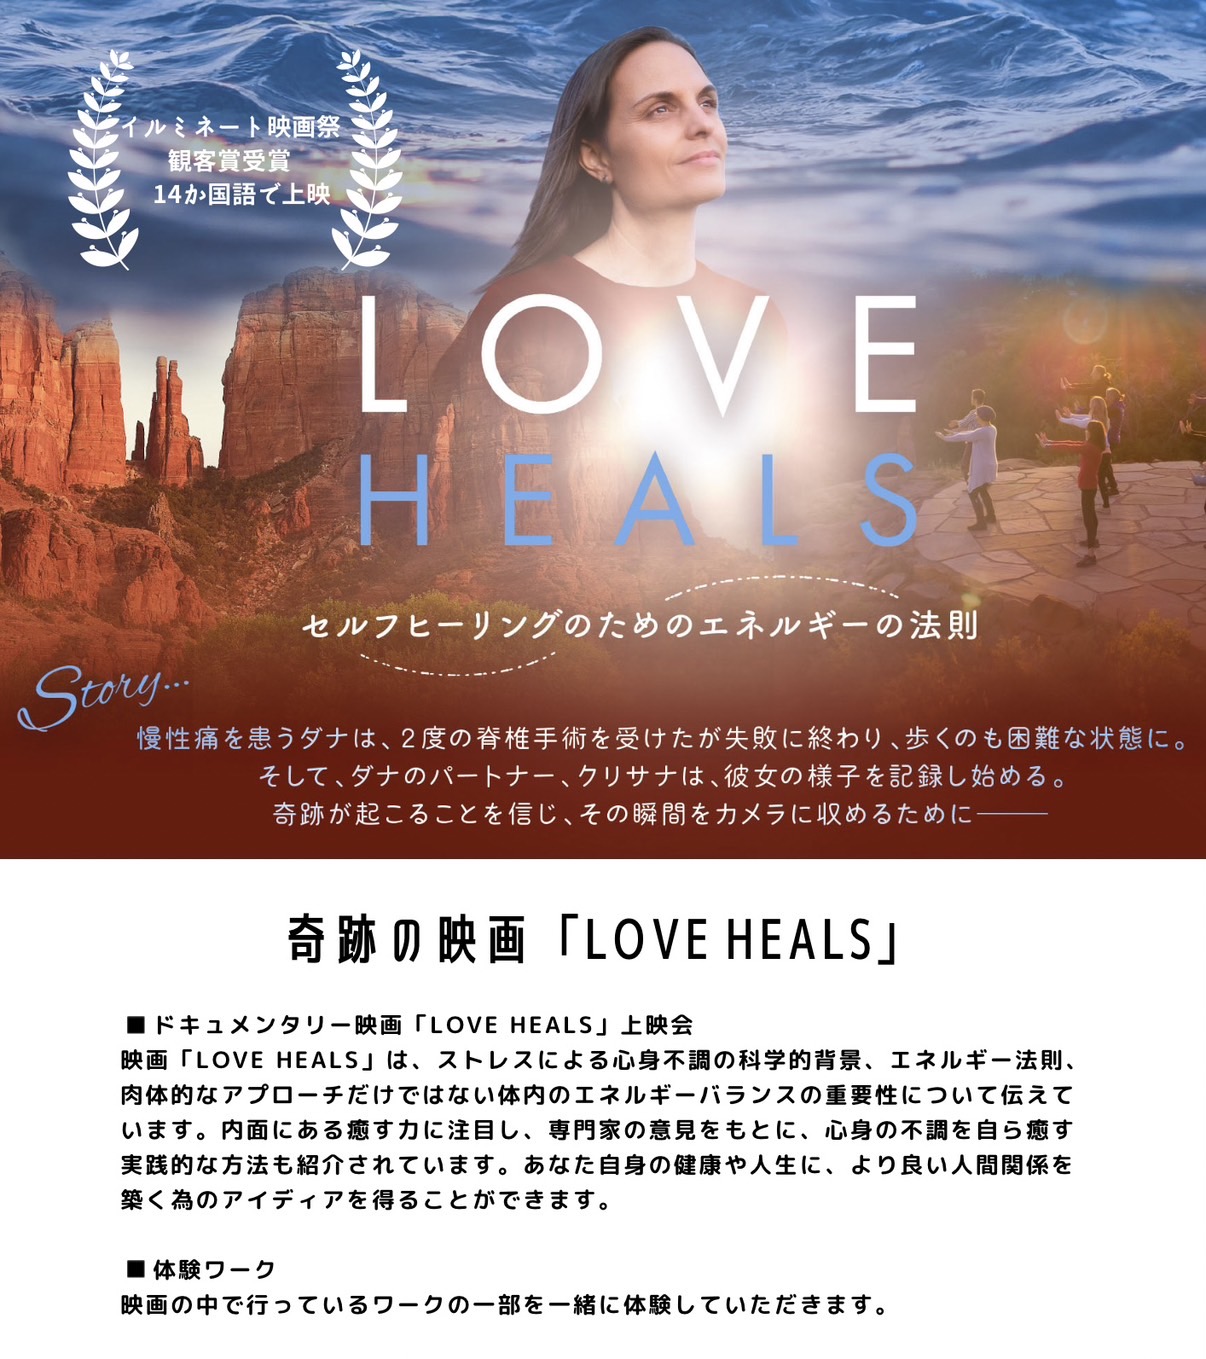 映画「LOVE HEALS」上映会with癒しフェアイメージ2枚目